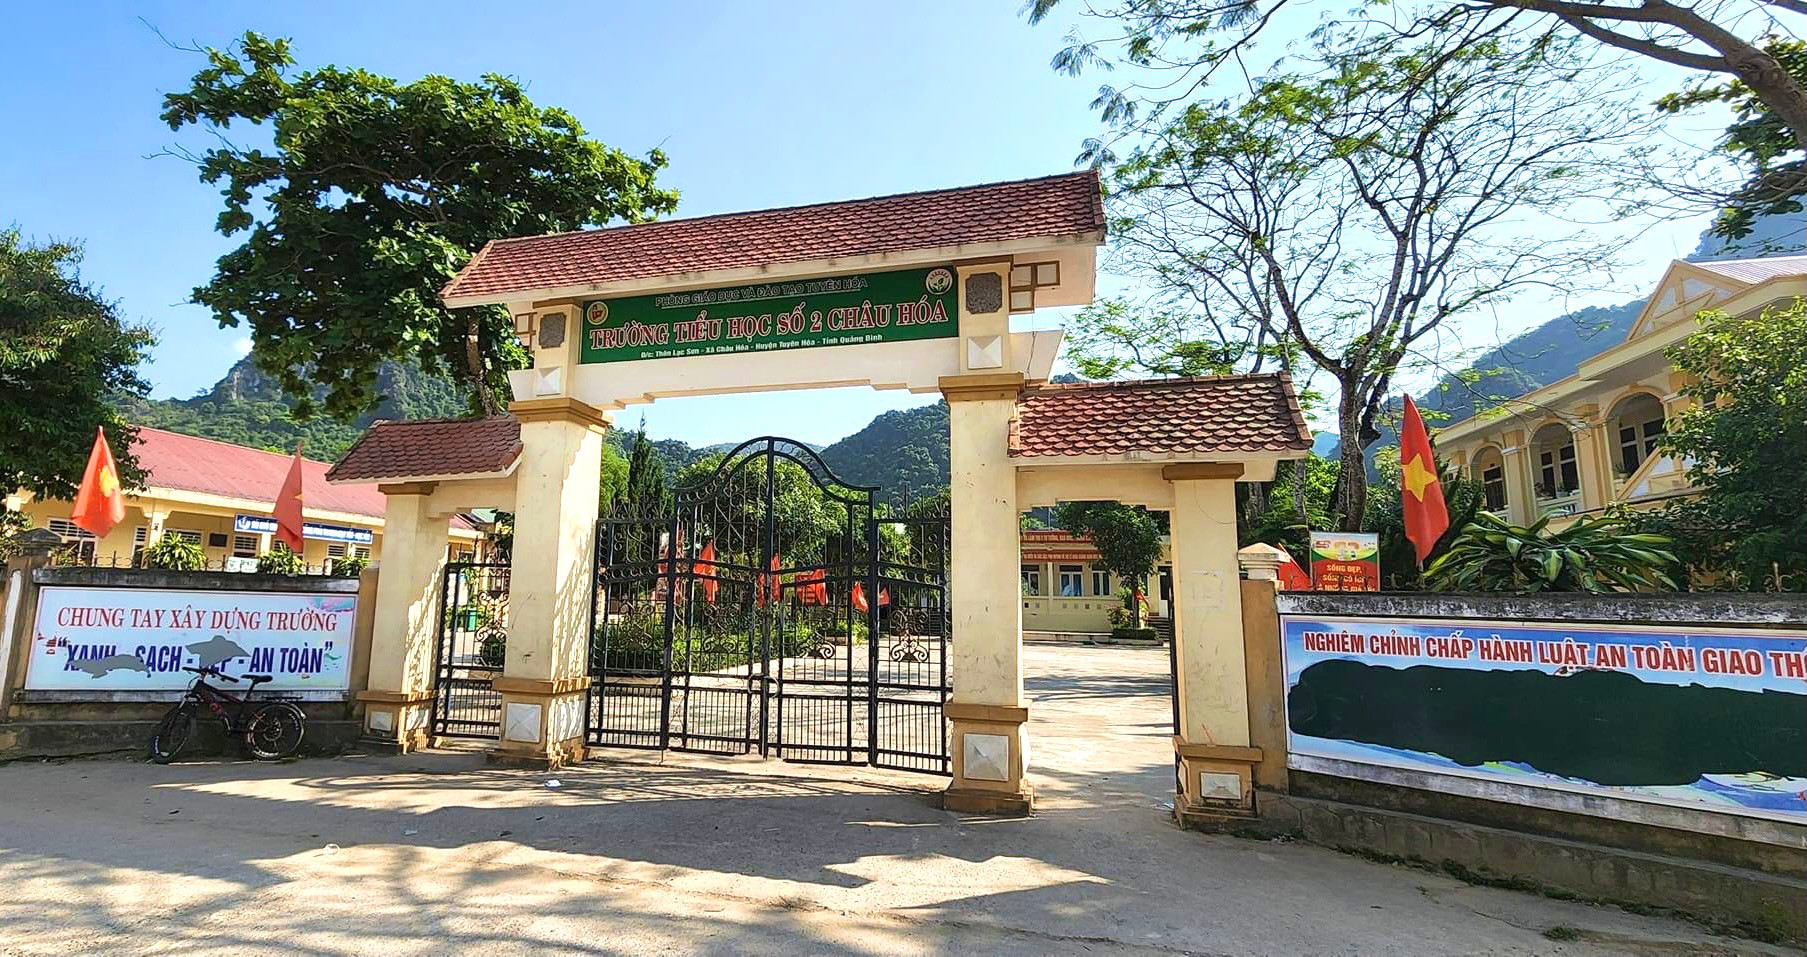 Trường tiểu học số 2 Châu Hoá, nơi ông Mai Thanh Huyền công tác.